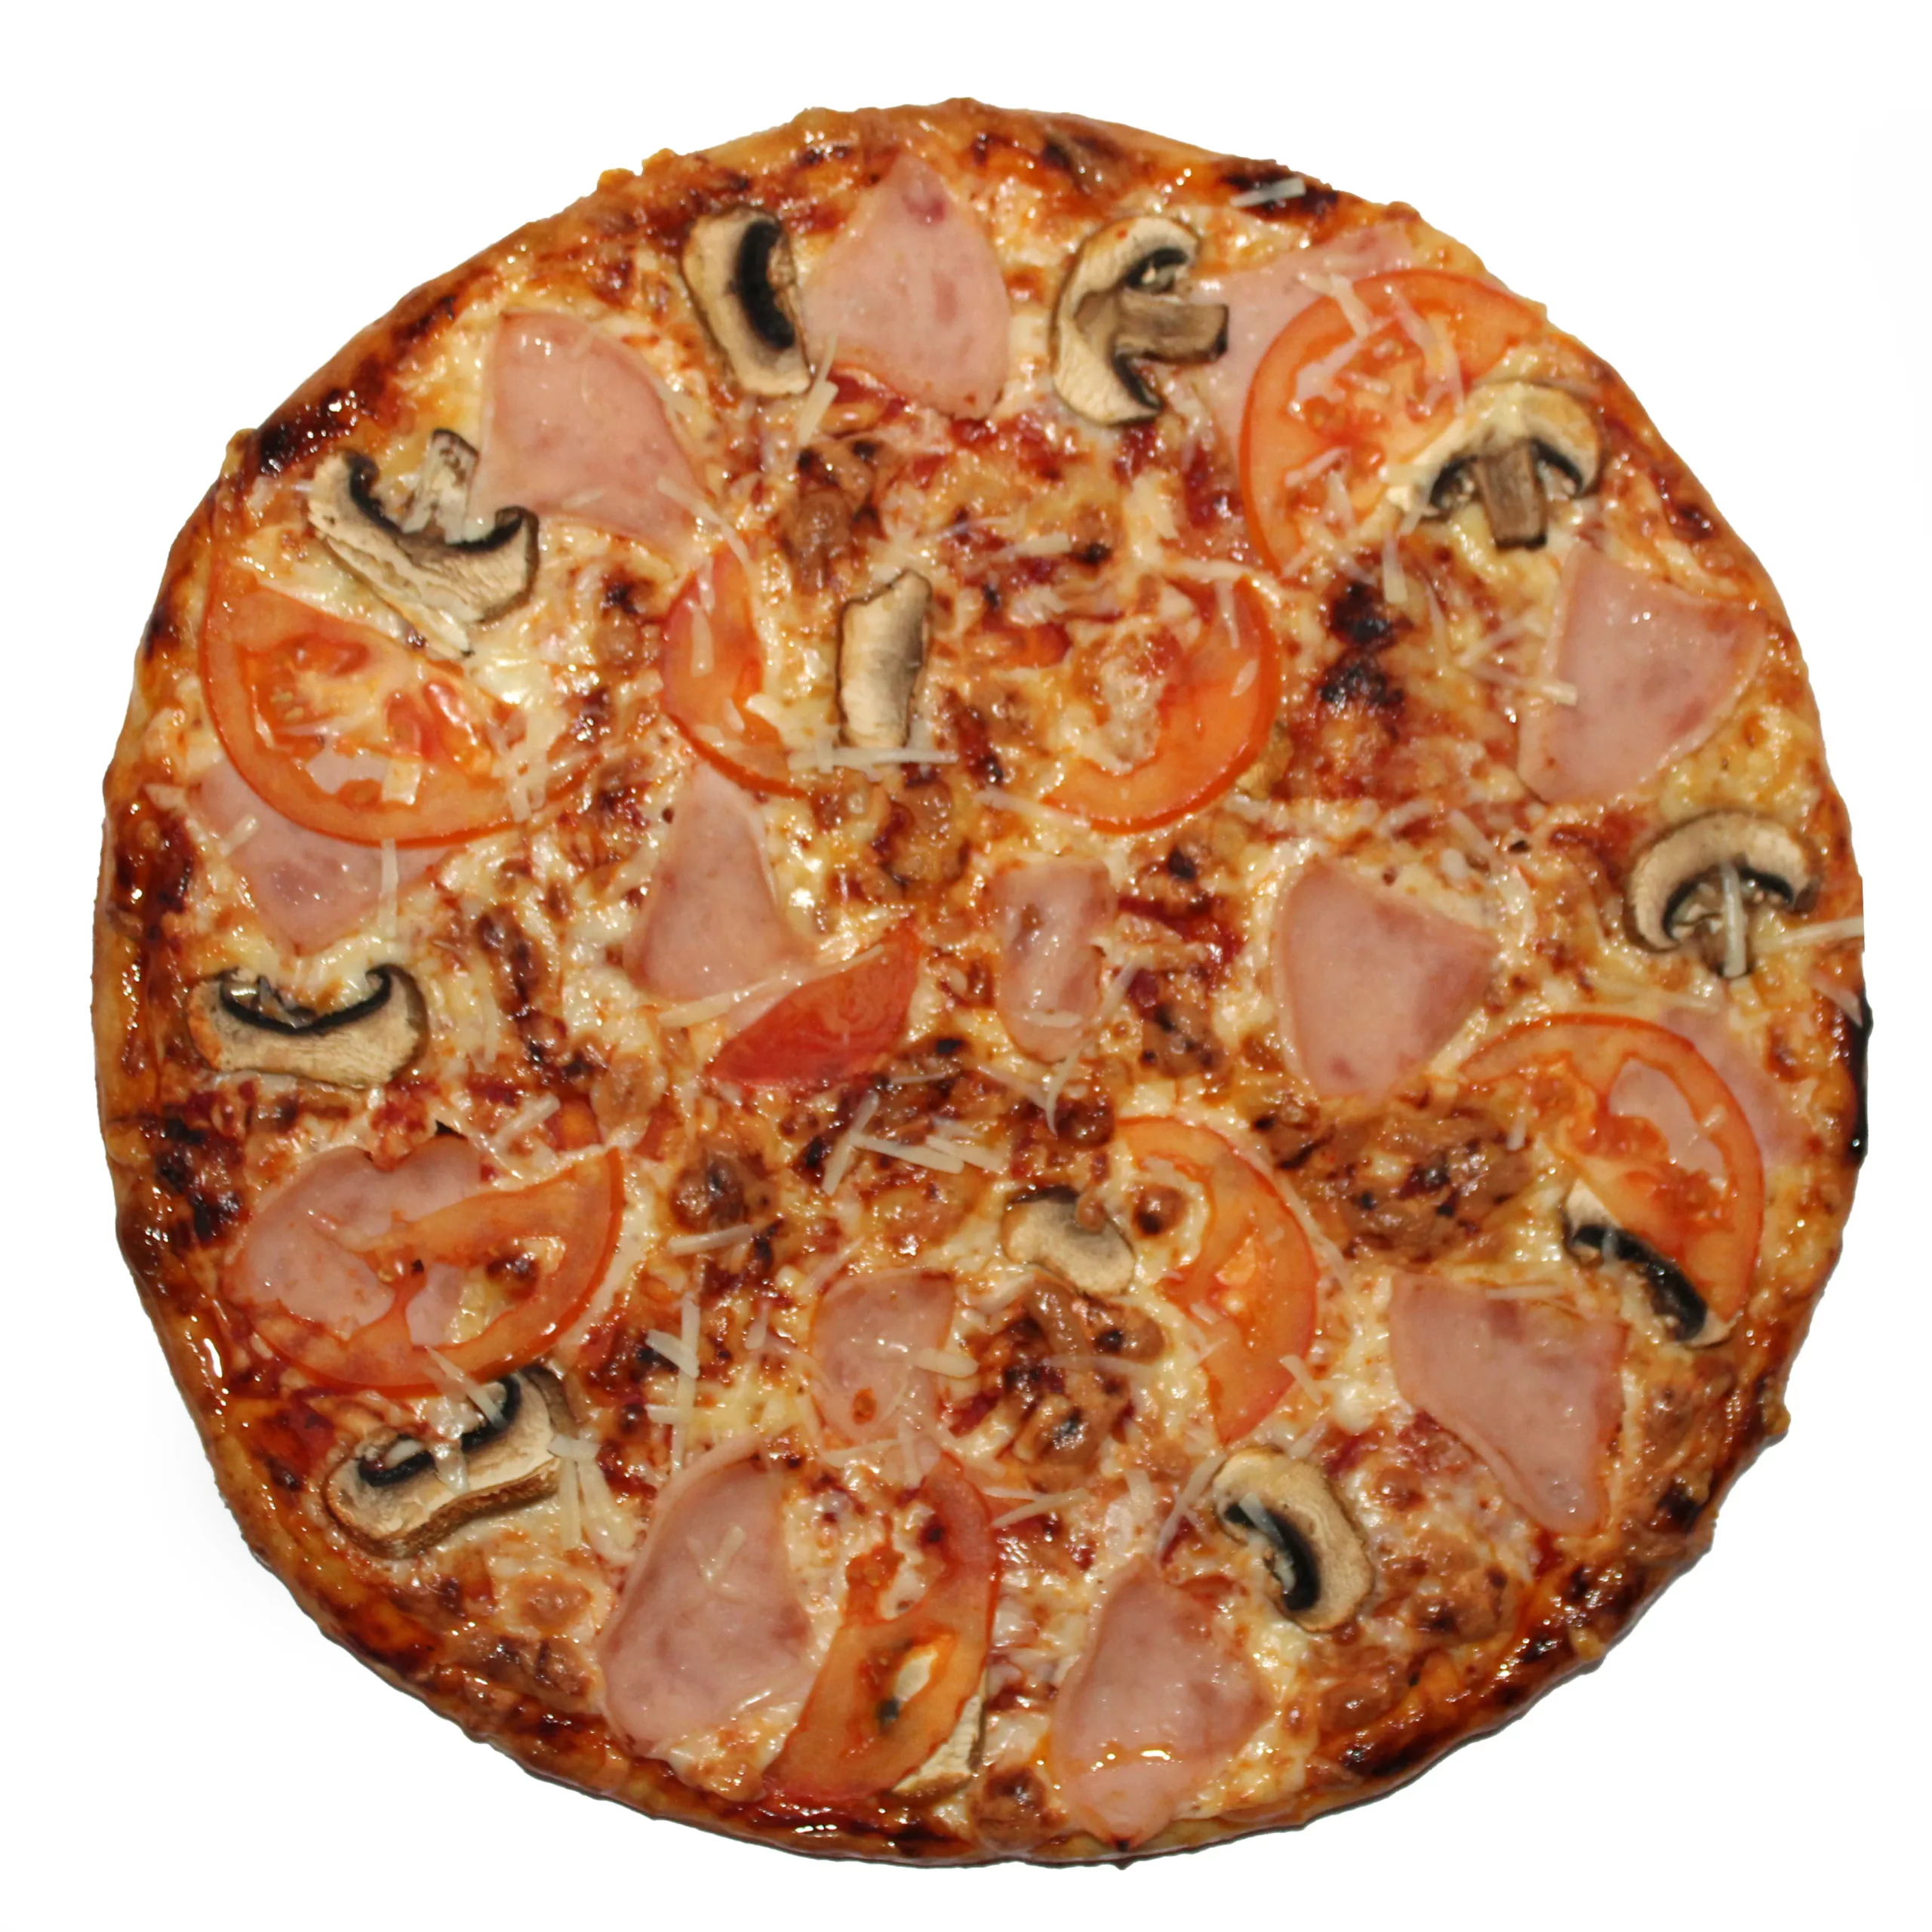 цезарь пицца с ветчиной и грибами замороженная отзыв фото 66